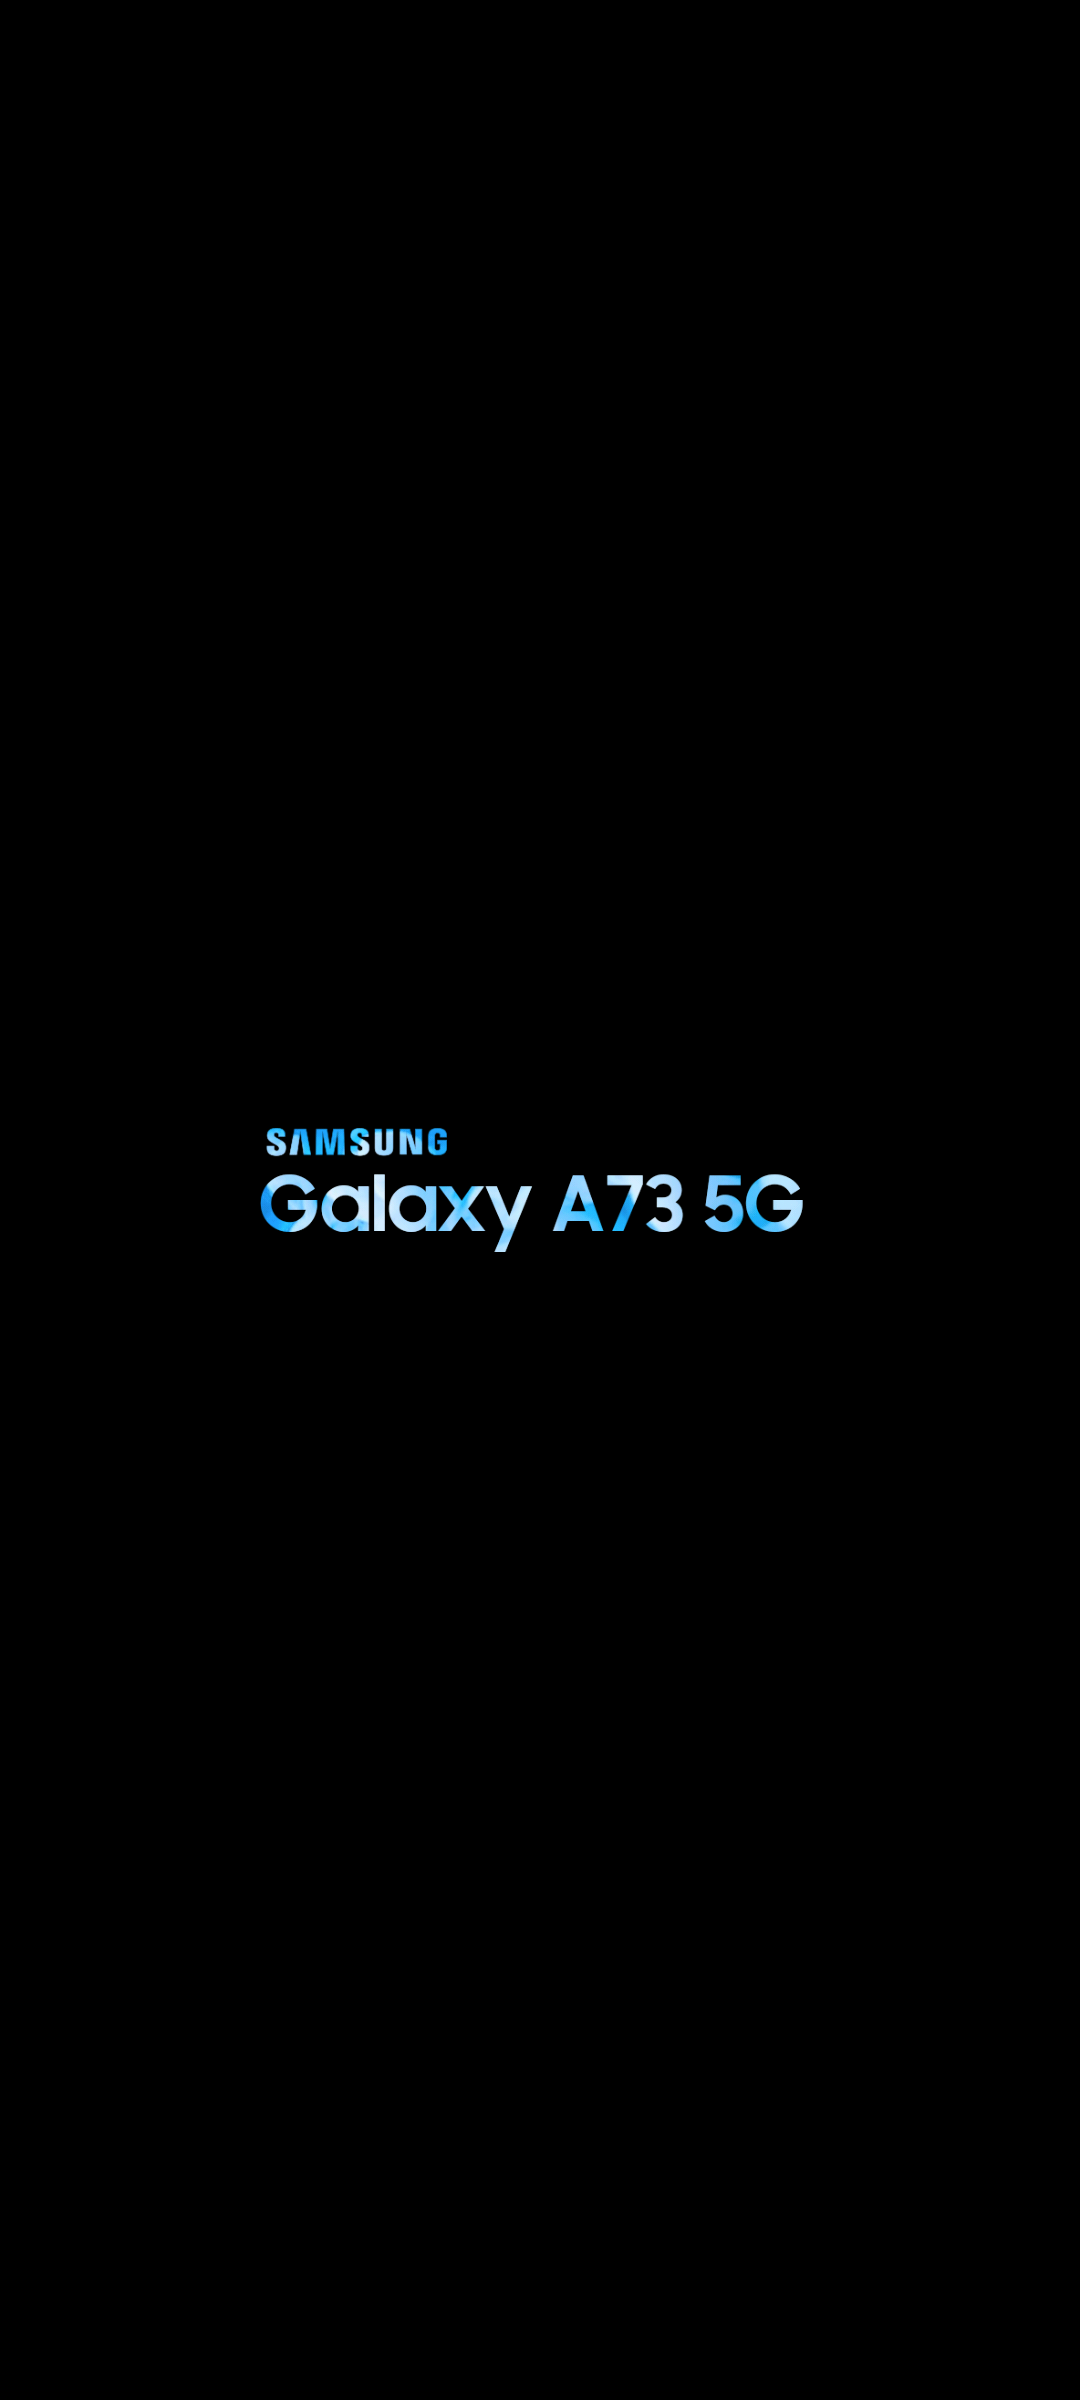 Samsung gửi tặng những hình nền galaxy a73 5G độc quyền cho các thành viên của hội viên Samsung. Hình ảnh sống động về vũ trụ, thiên nhiên hay nghệ thuật sẽ đem lại cho bạn những trải nghiệm ngoài mong đợi khi sử dụng điện thoại Samsung galaxy a73 5G. Hãy cập nhật ngay để được nhận những bức ảnh độc đáo này!